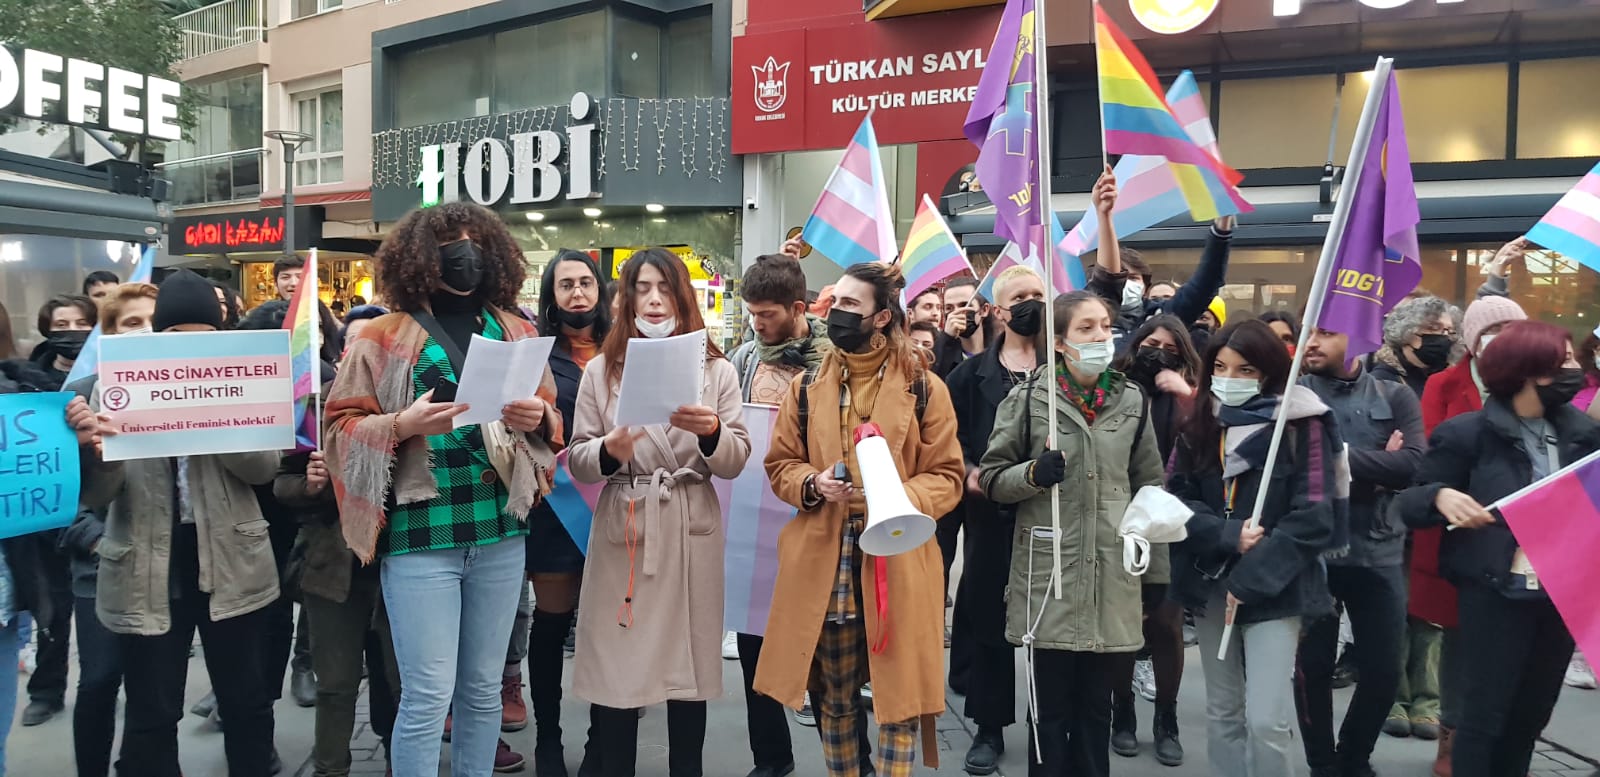 “Uyandığımda ‘İzmir’de bir trans daha öldürüldü’ haberi görmek istemiyorum” | Kaos GL - LGBTİ+ Haber Portalı Haber